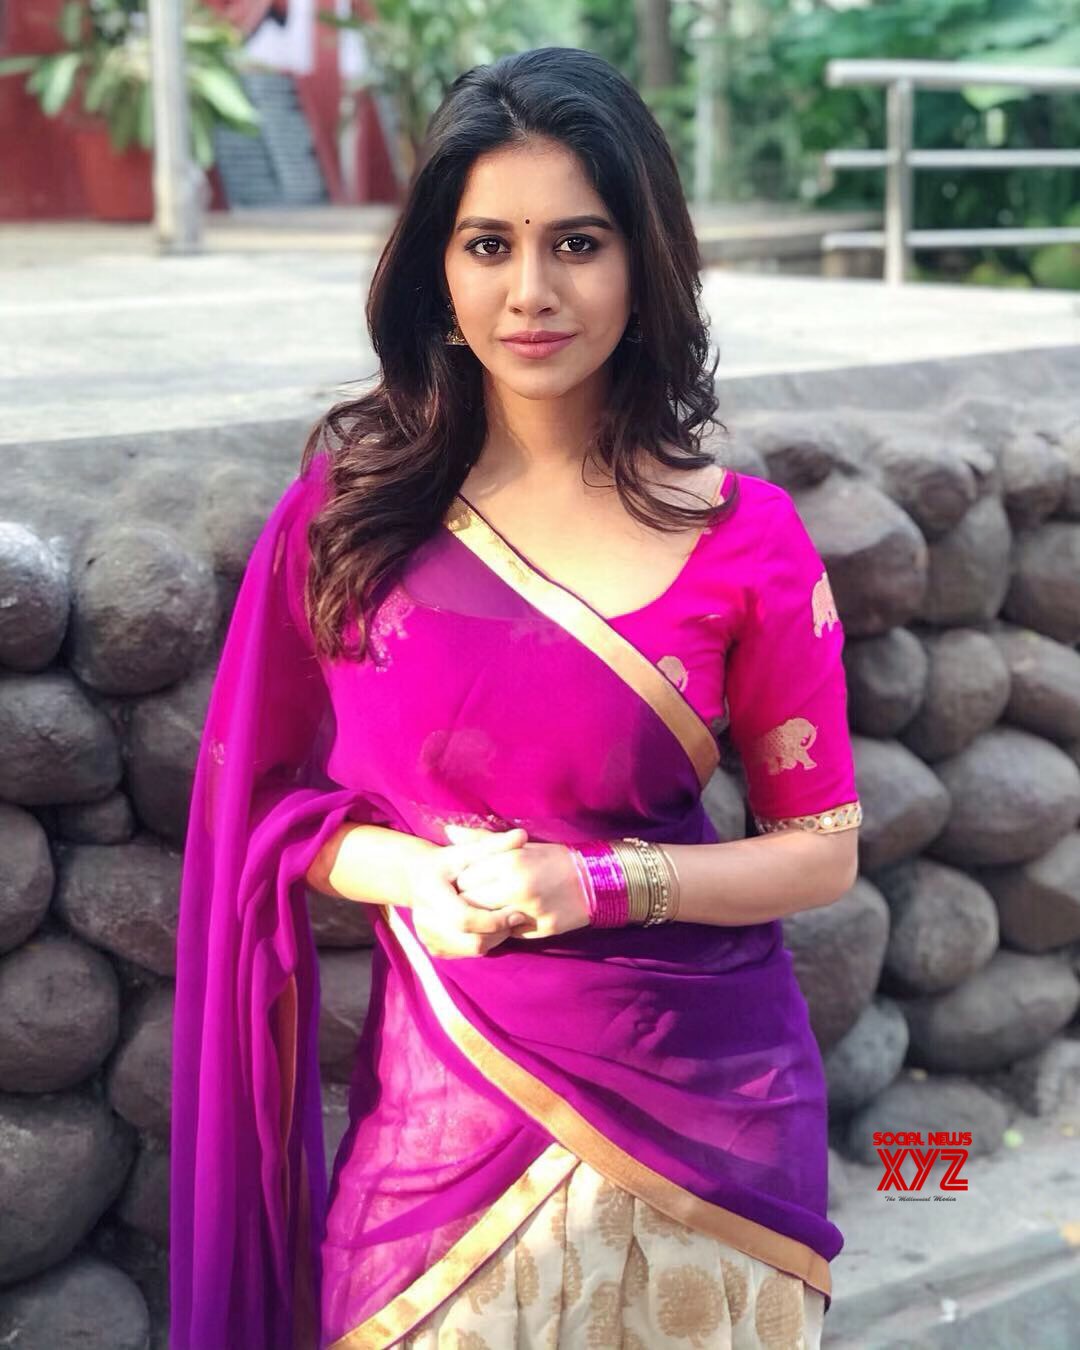 Actress Nabha Natesh Hot Stills In Half Saree - Social News XYZ